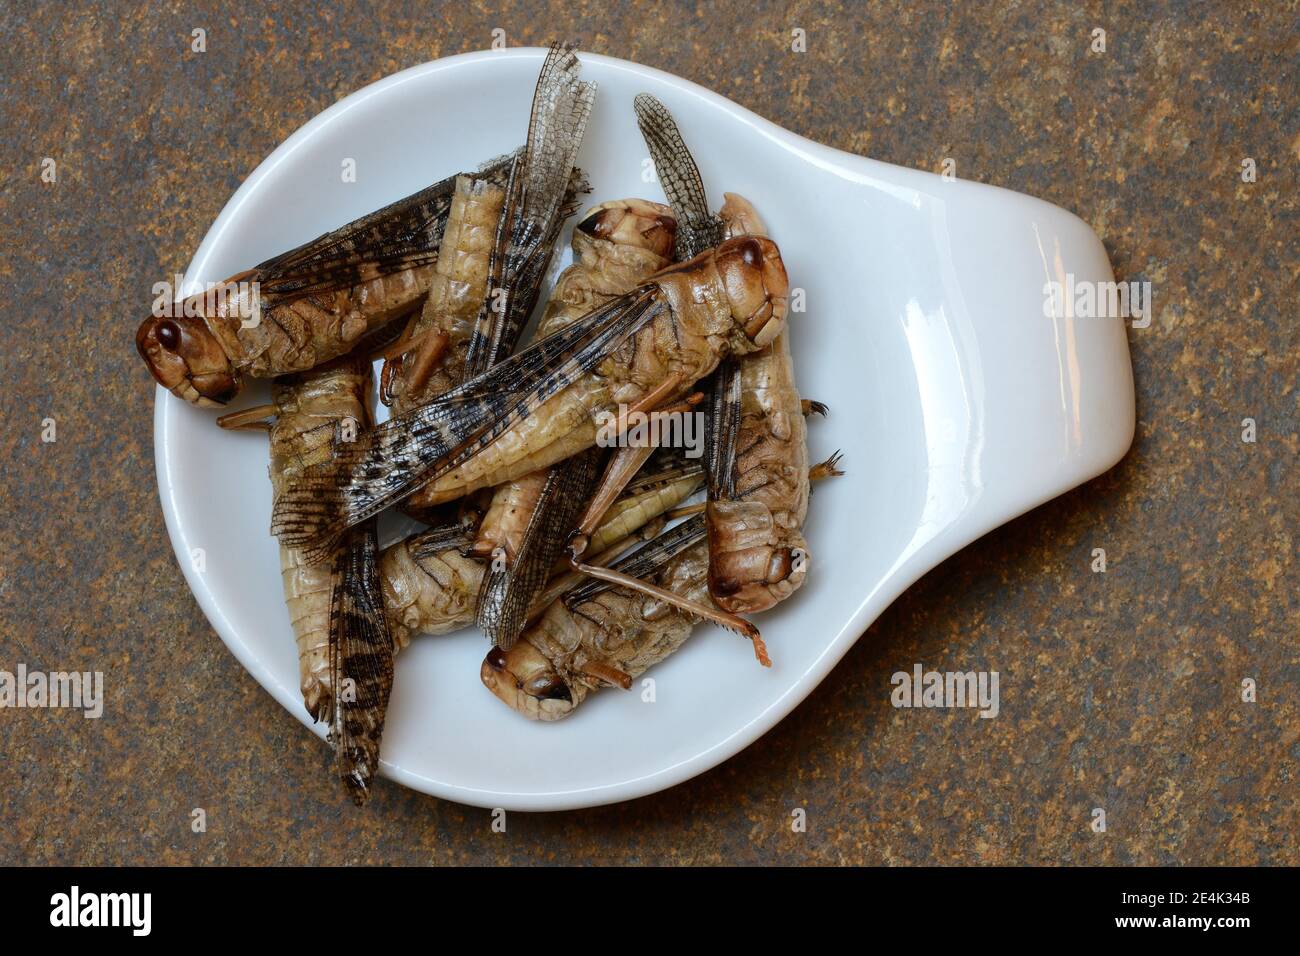 Dried locusts in shell, European locust, Locusta migratoria Stock